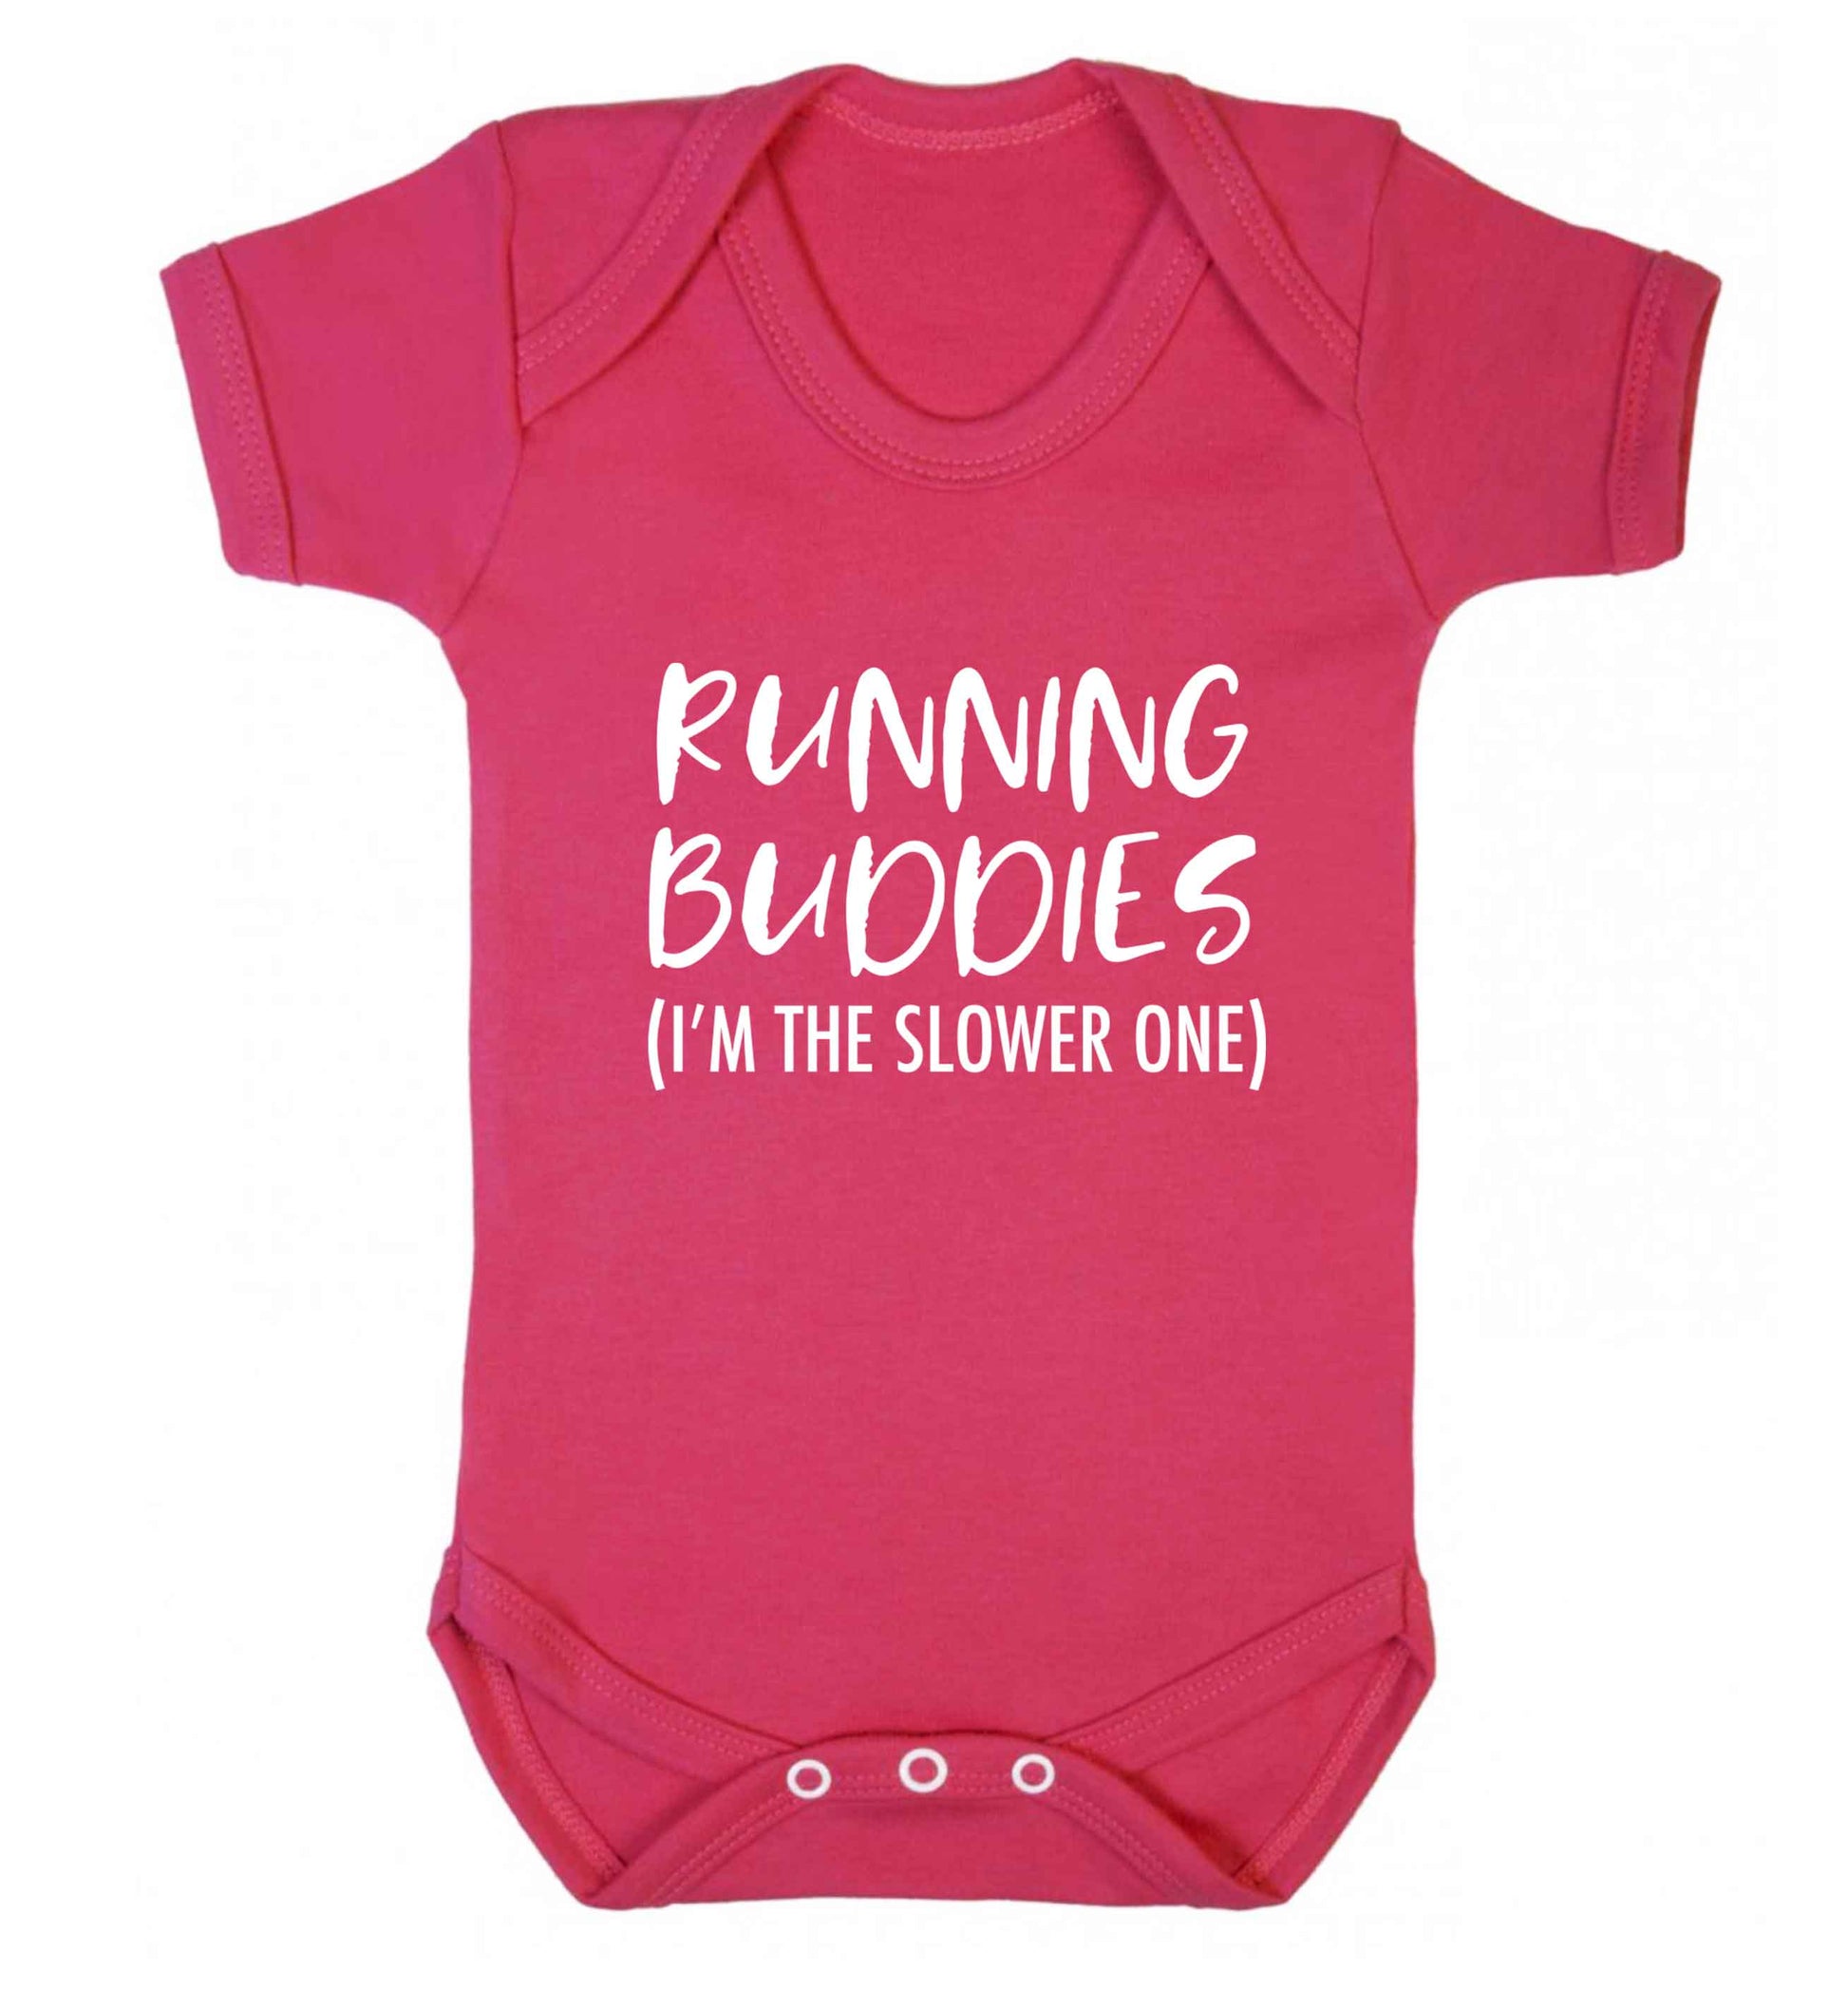 Running buddies (I'm the slower one) baby vest dark pink 18-24 months